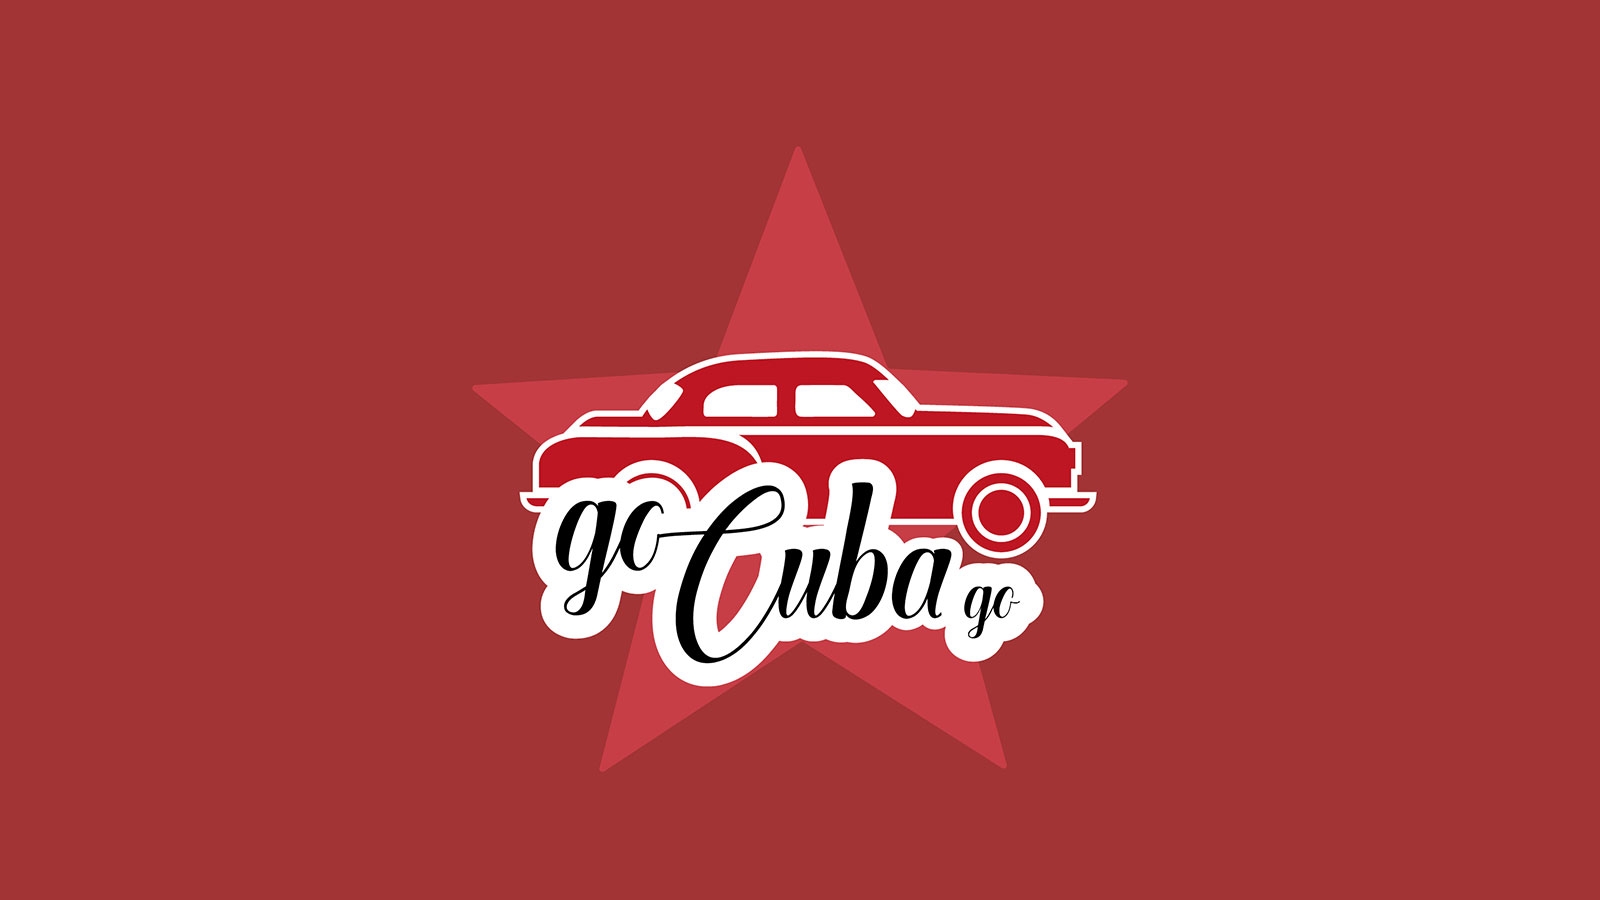 Go Cuba Go | gocubago.com | 2018 (Logo No 04) © echonet communication GmbH